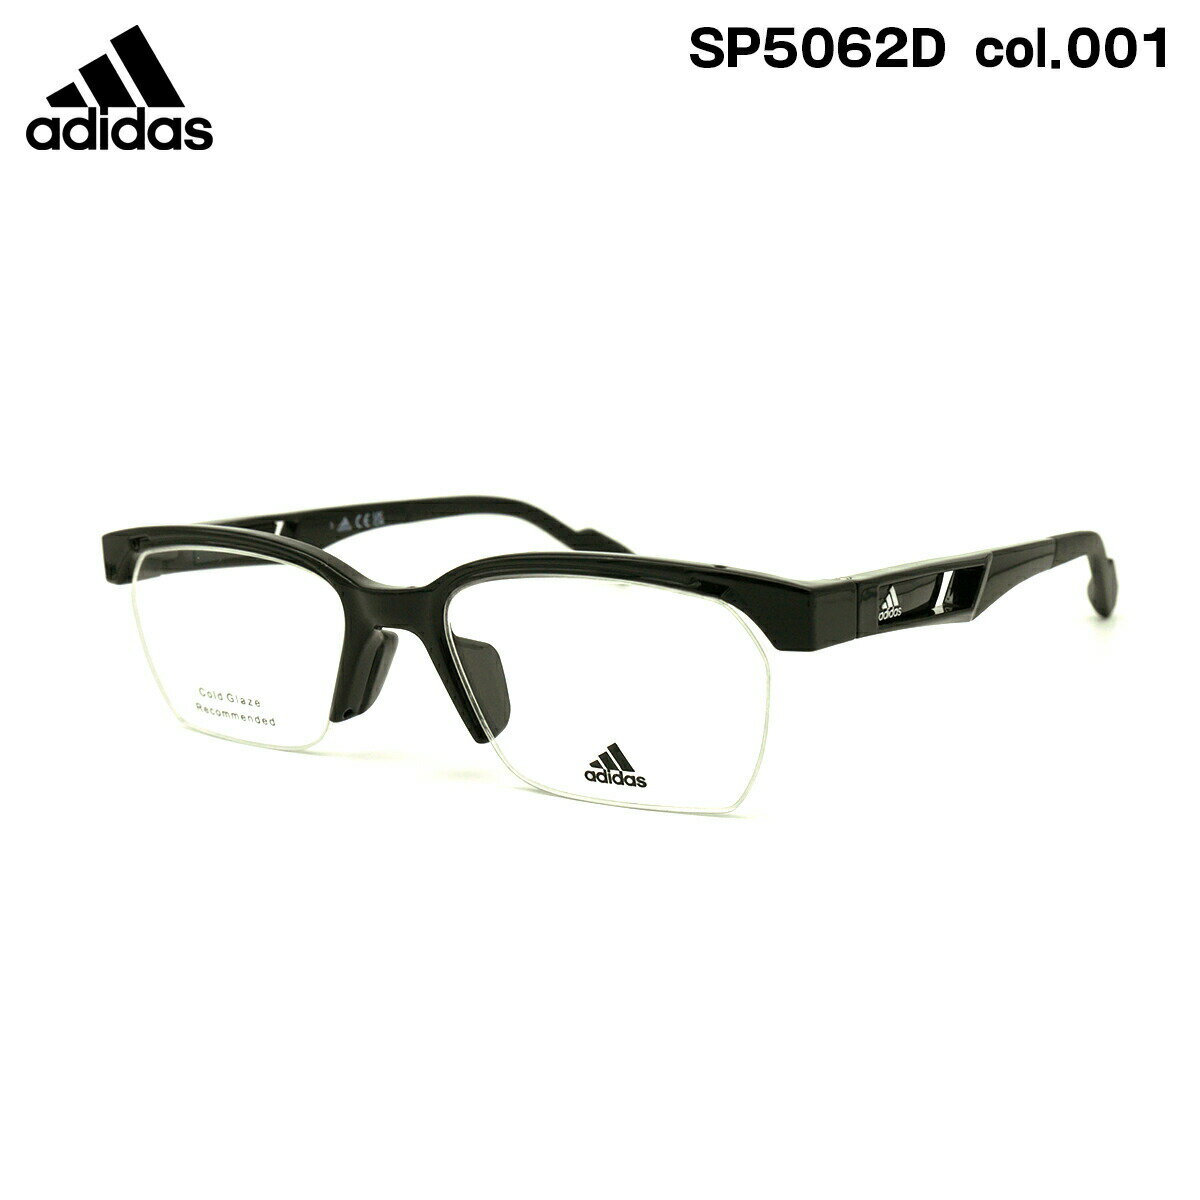 アディダス メガネ SP5062D (SP5062D/V) col.001 52mm adidas アジアンフィット 国内正規品 フレーム メンズ レディース